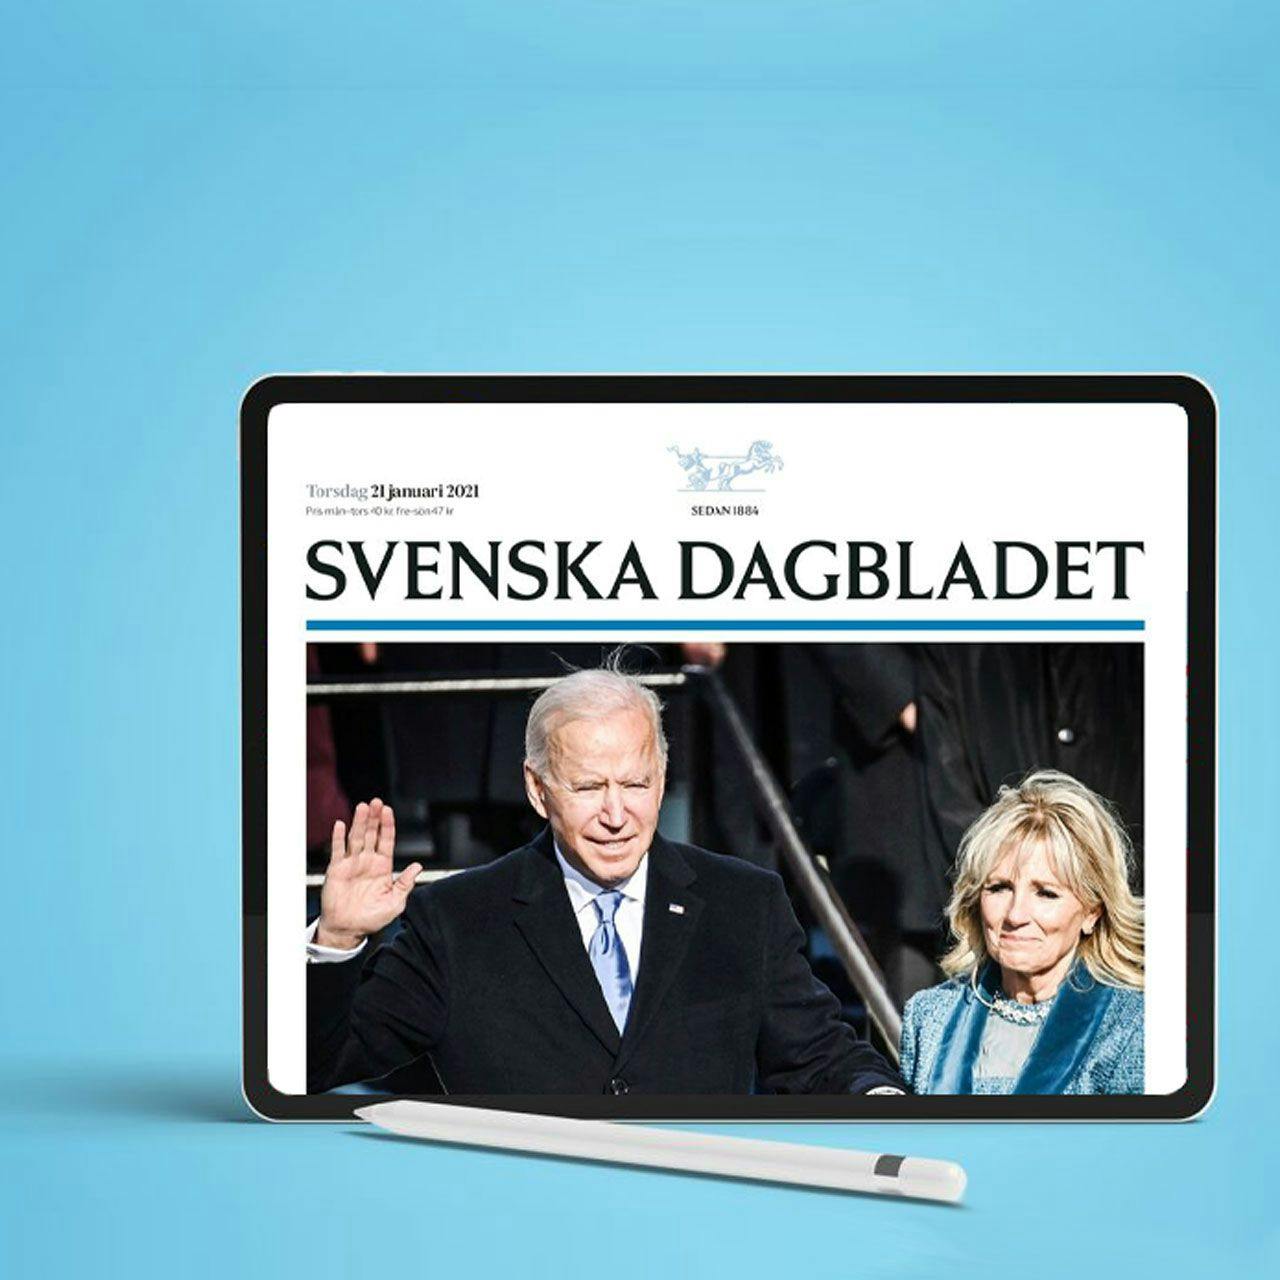 Svenska Dagbladet's website is displayed on an iPad.